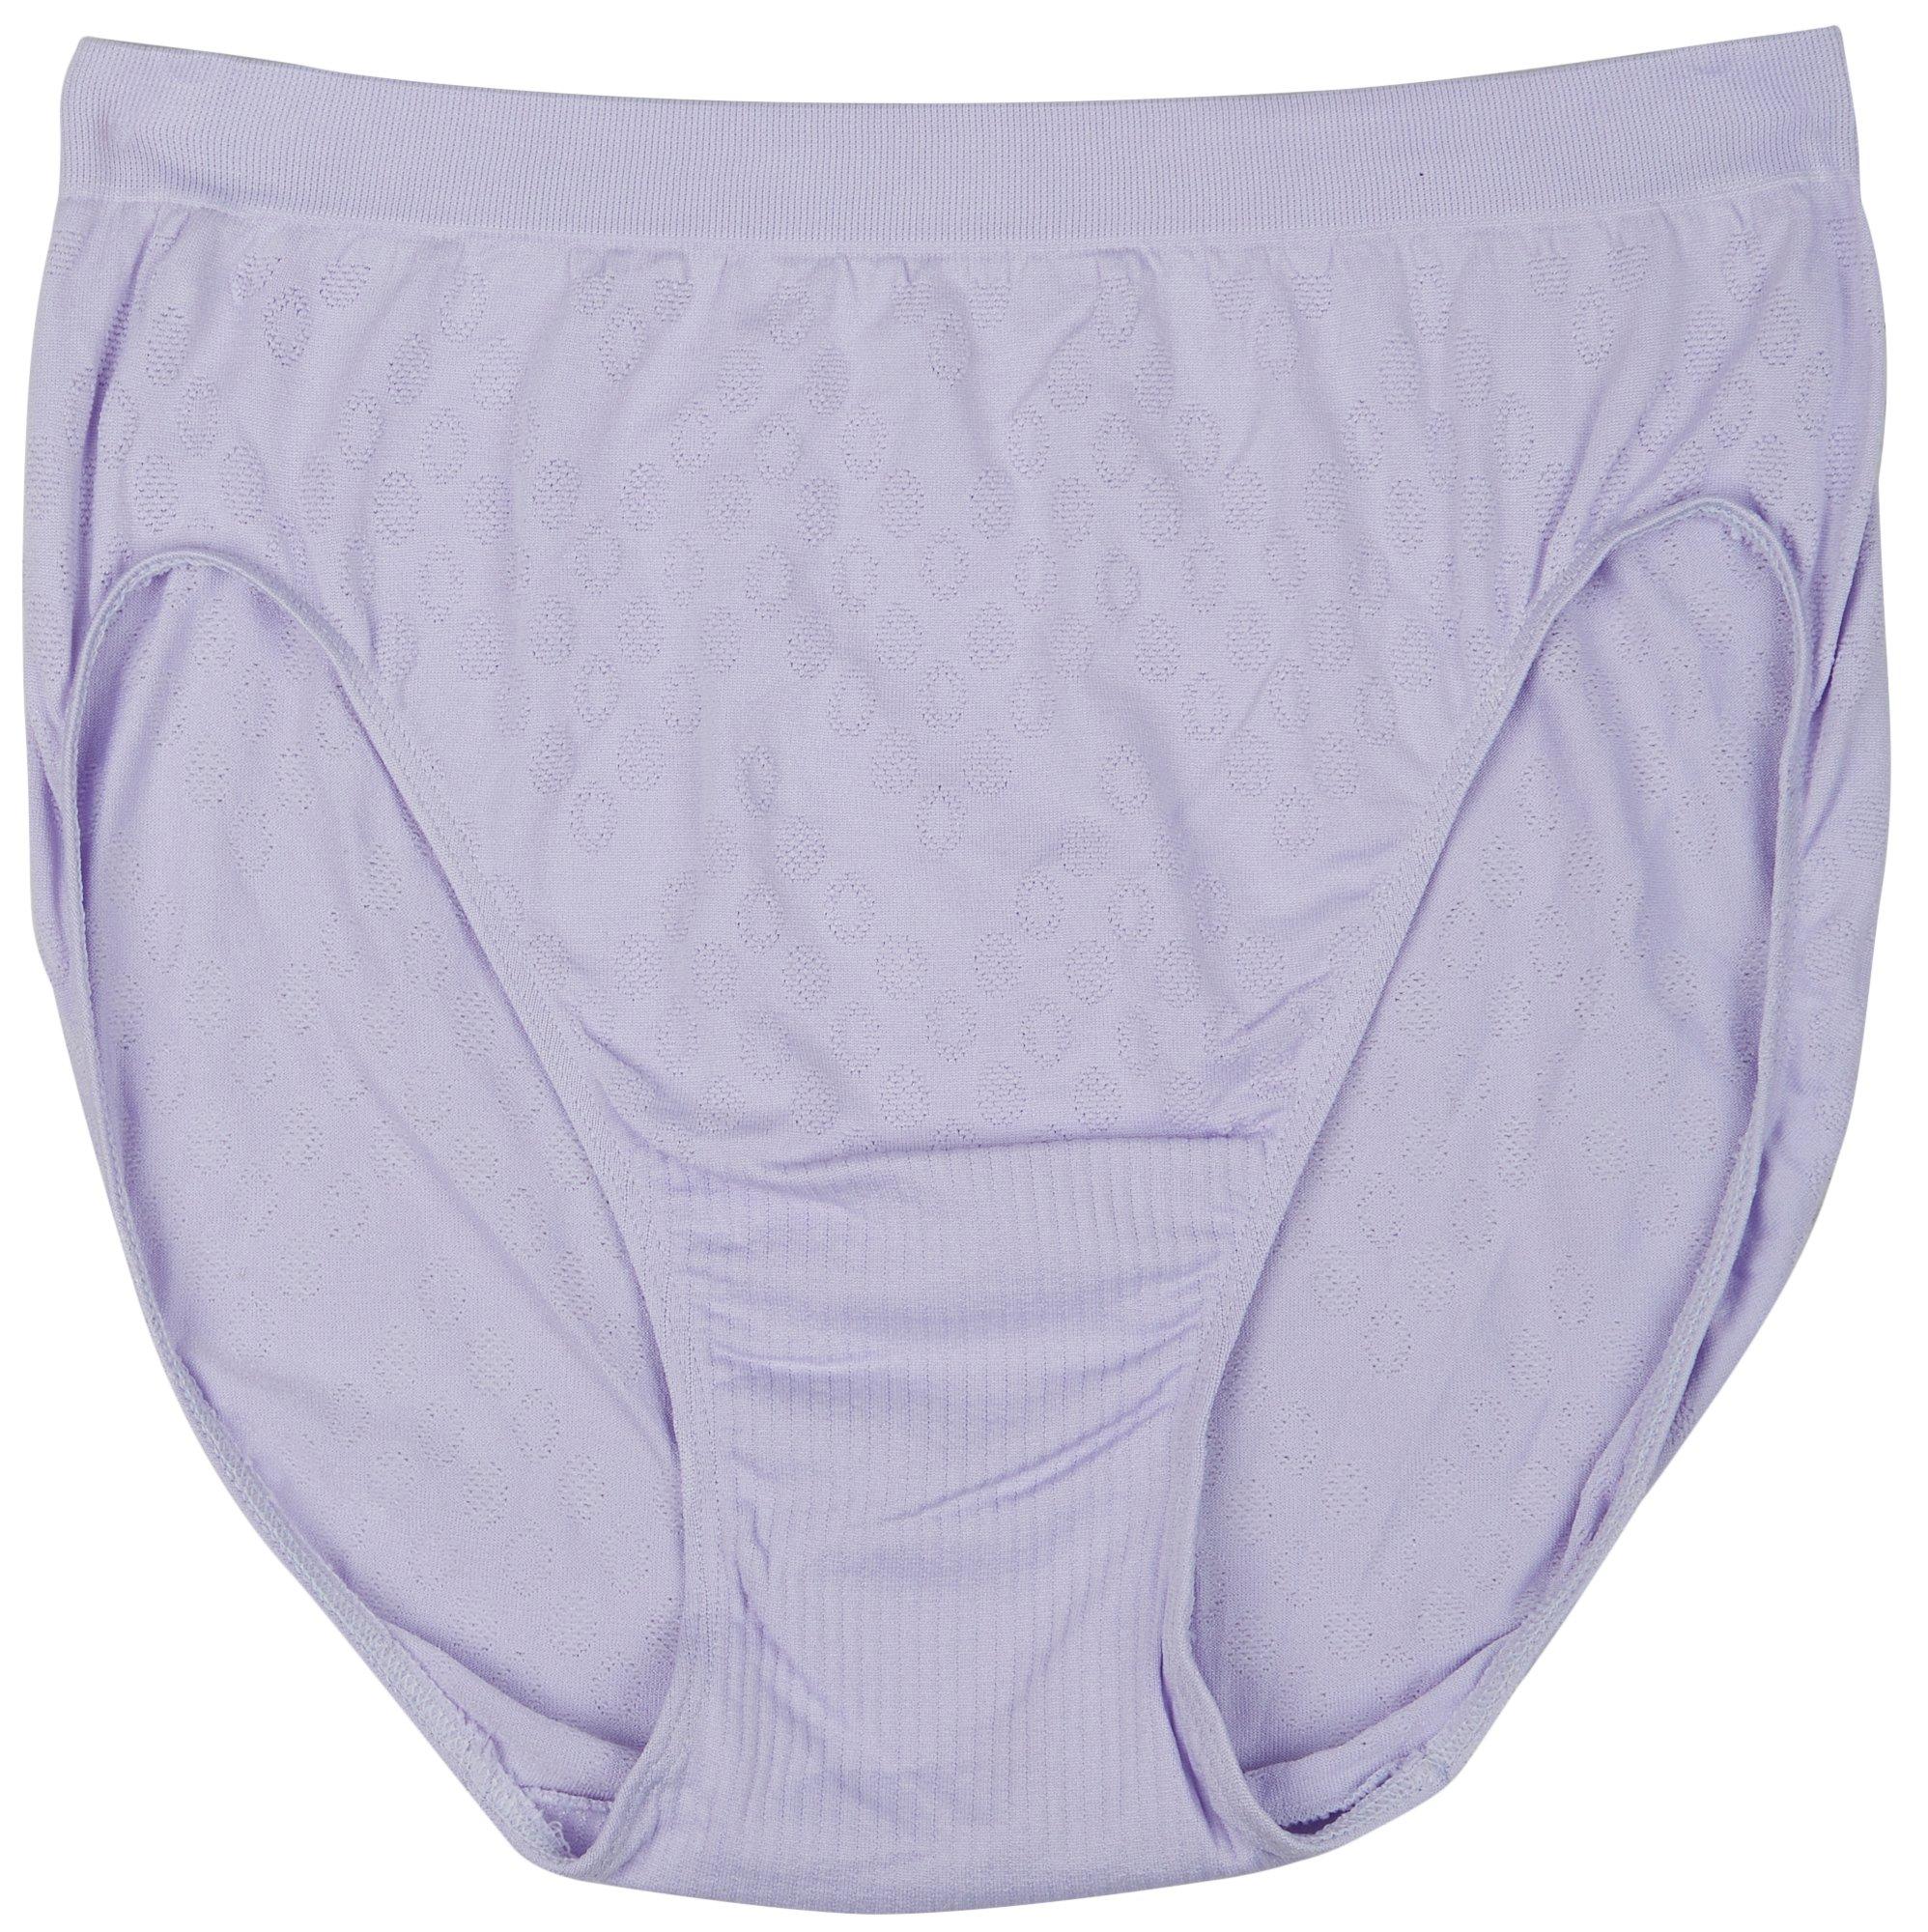 Women's Underwear, Panties & Thongs